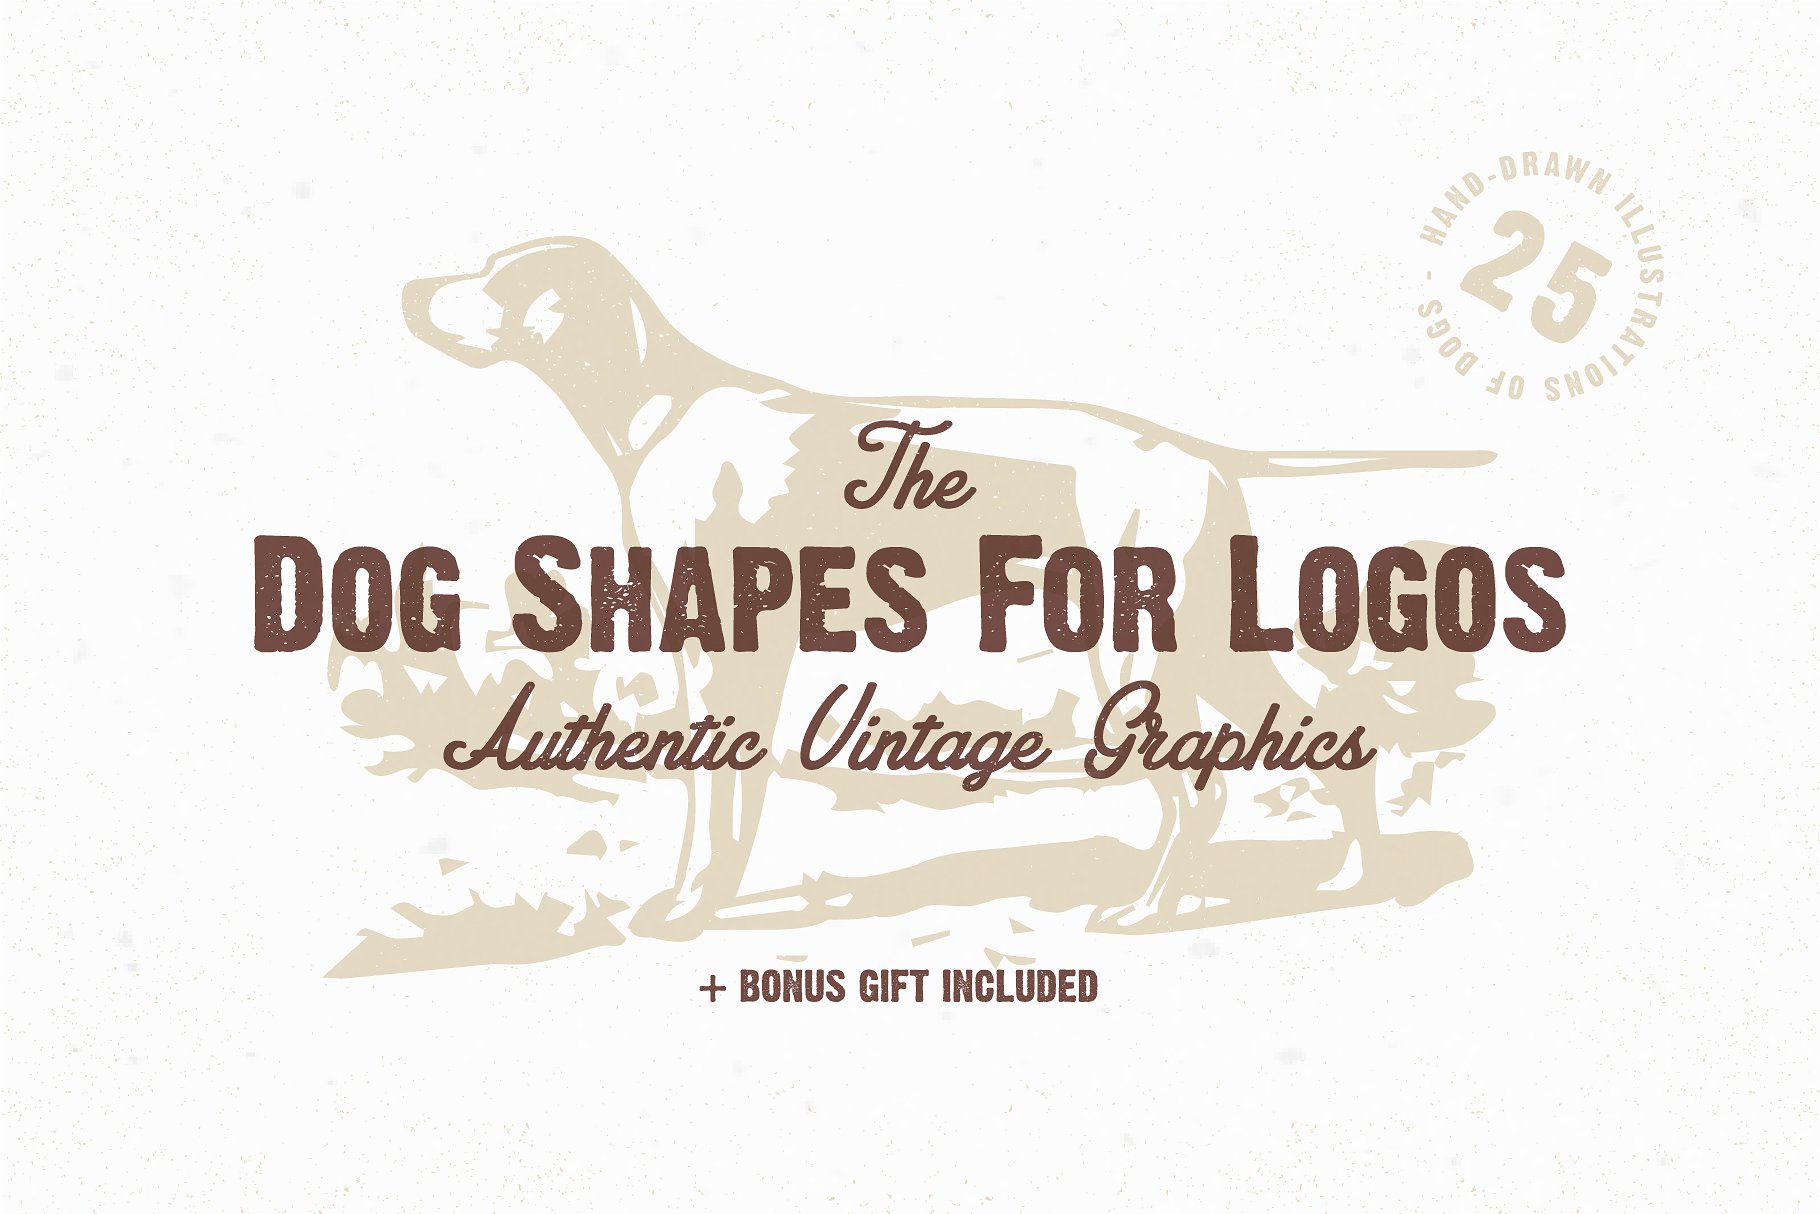 宠物狗形状剪影Logo设计素材包 The Dog Shapes For Logos Pack插图